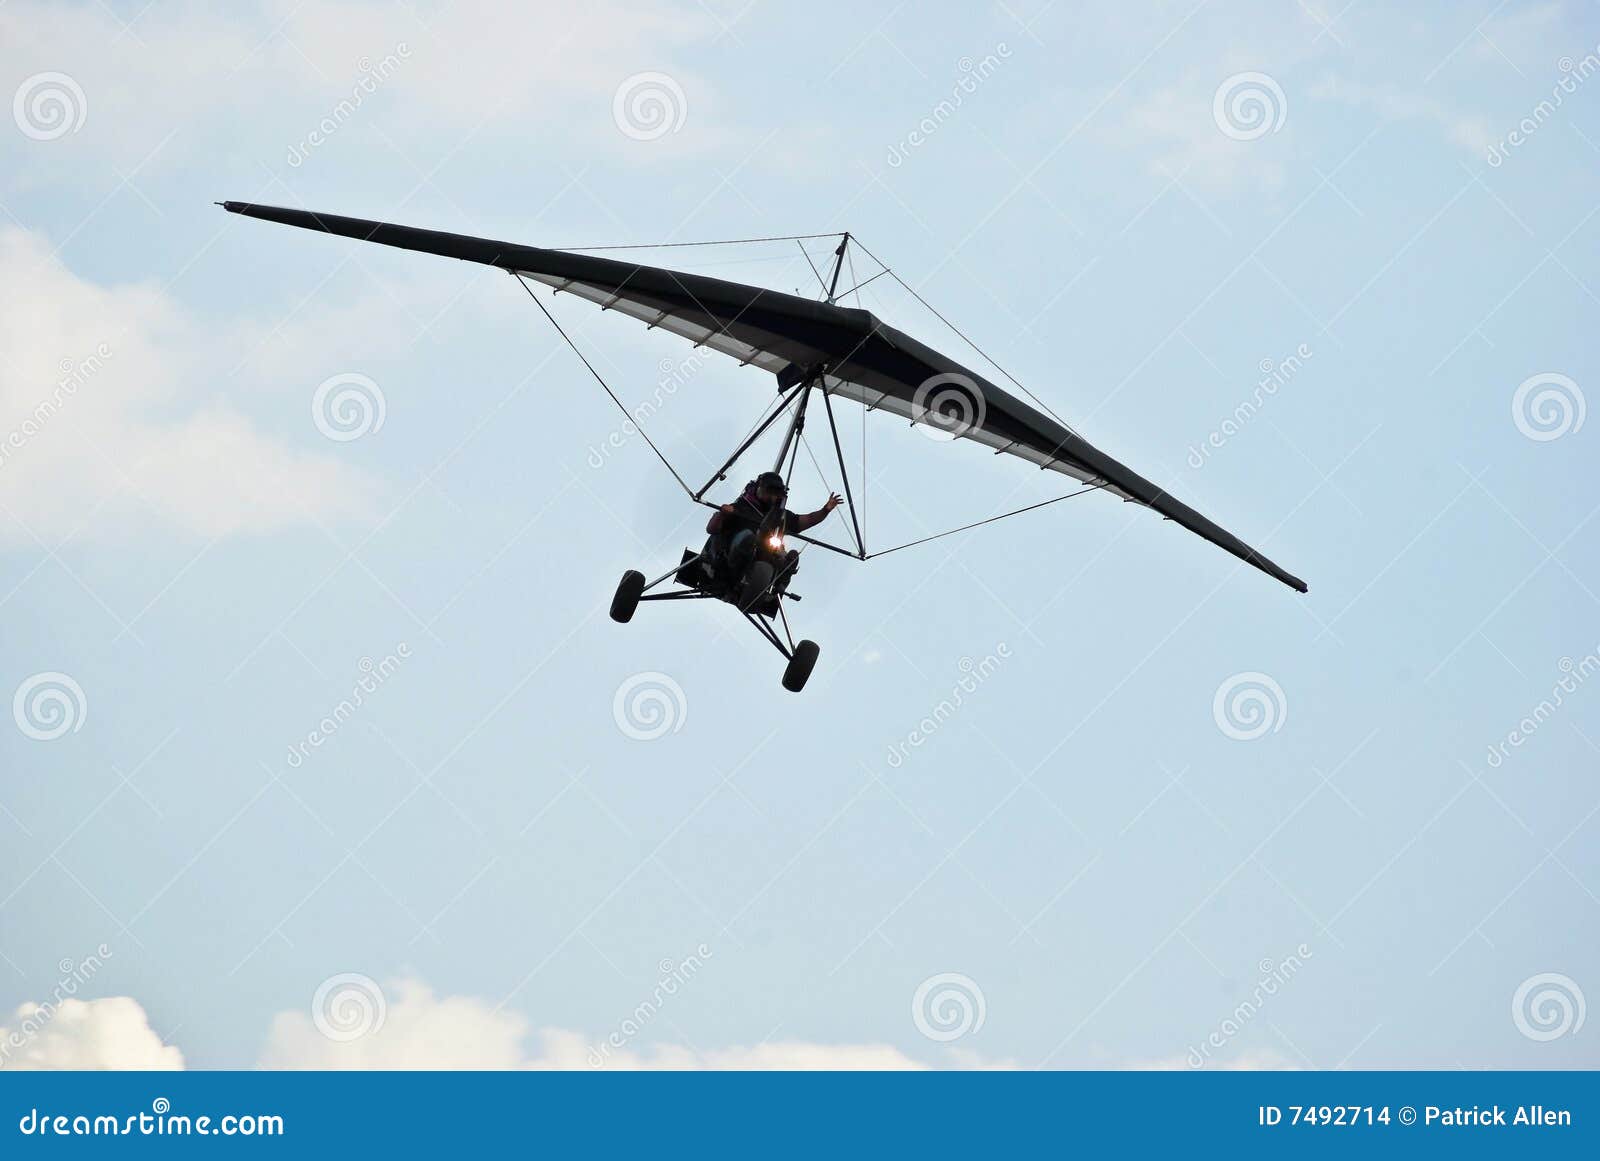 motorized hang glider in flight 02